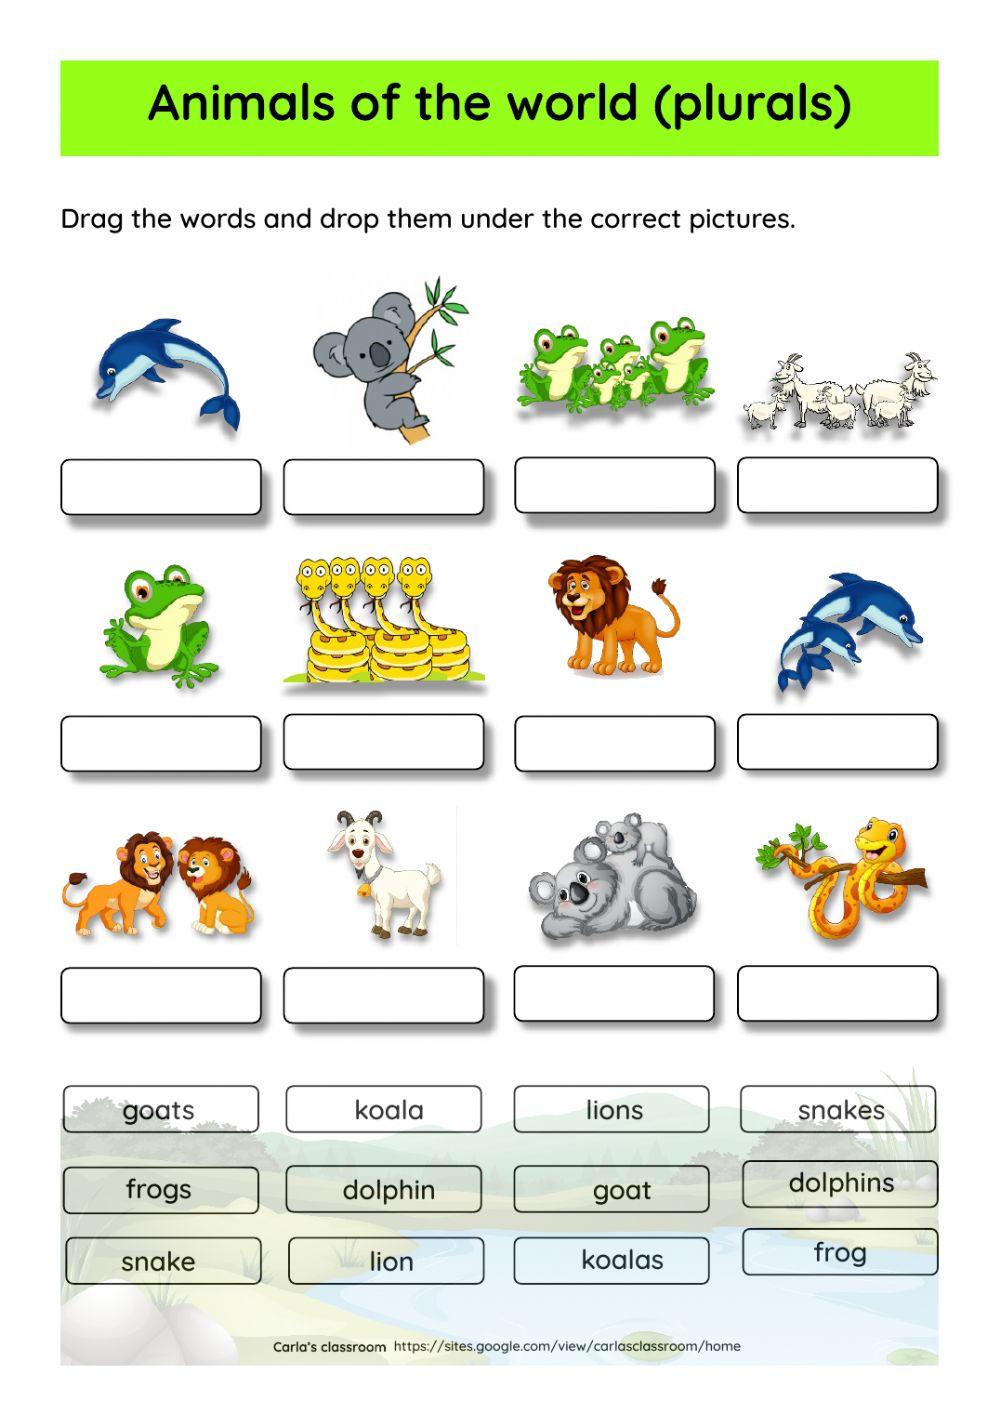 Animals of the world (plurals)